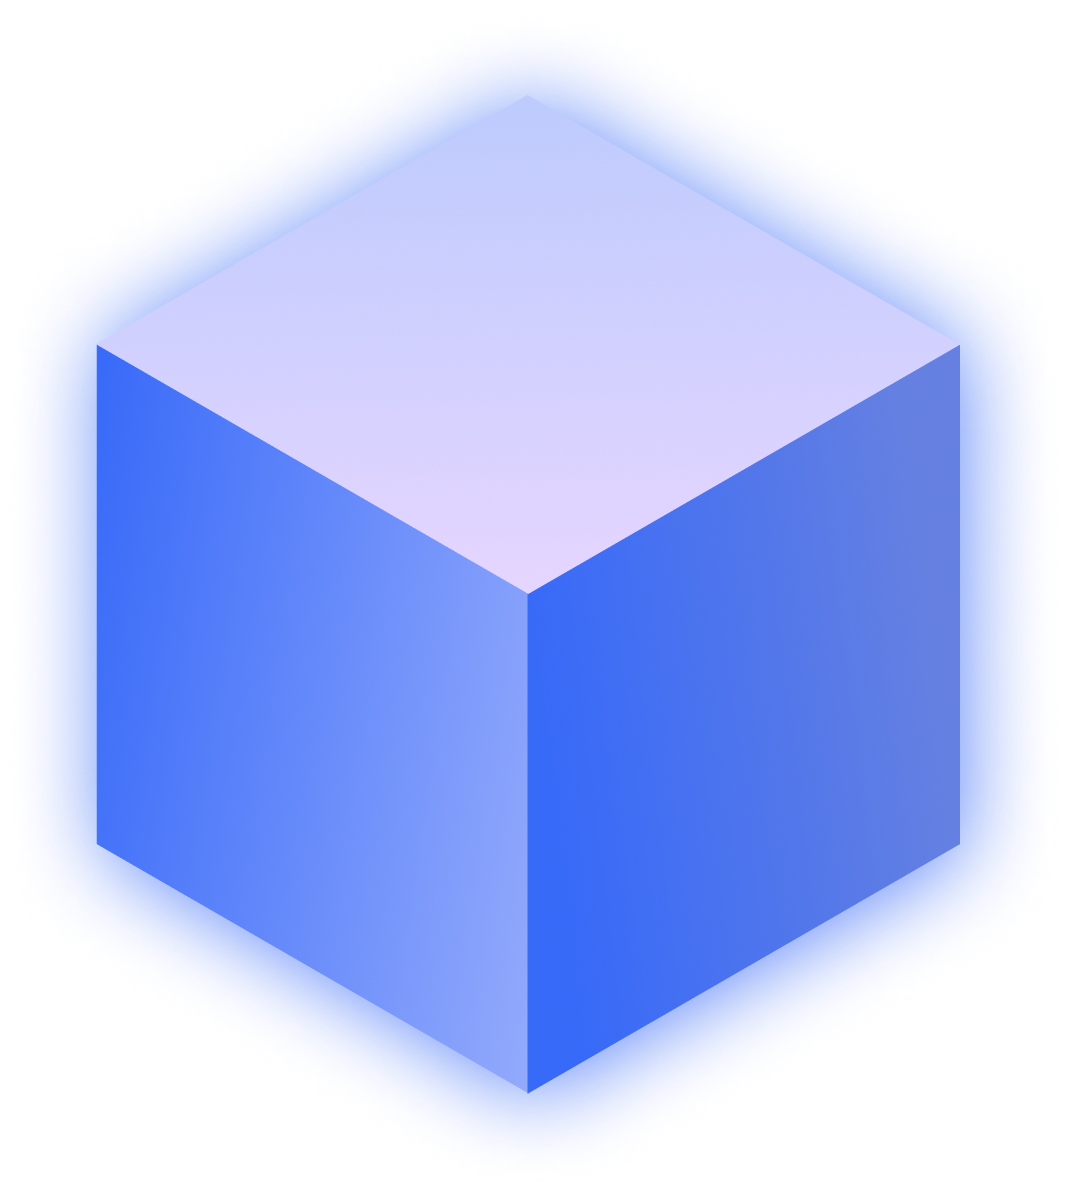 Cube Geometric Shape - A UX Studio